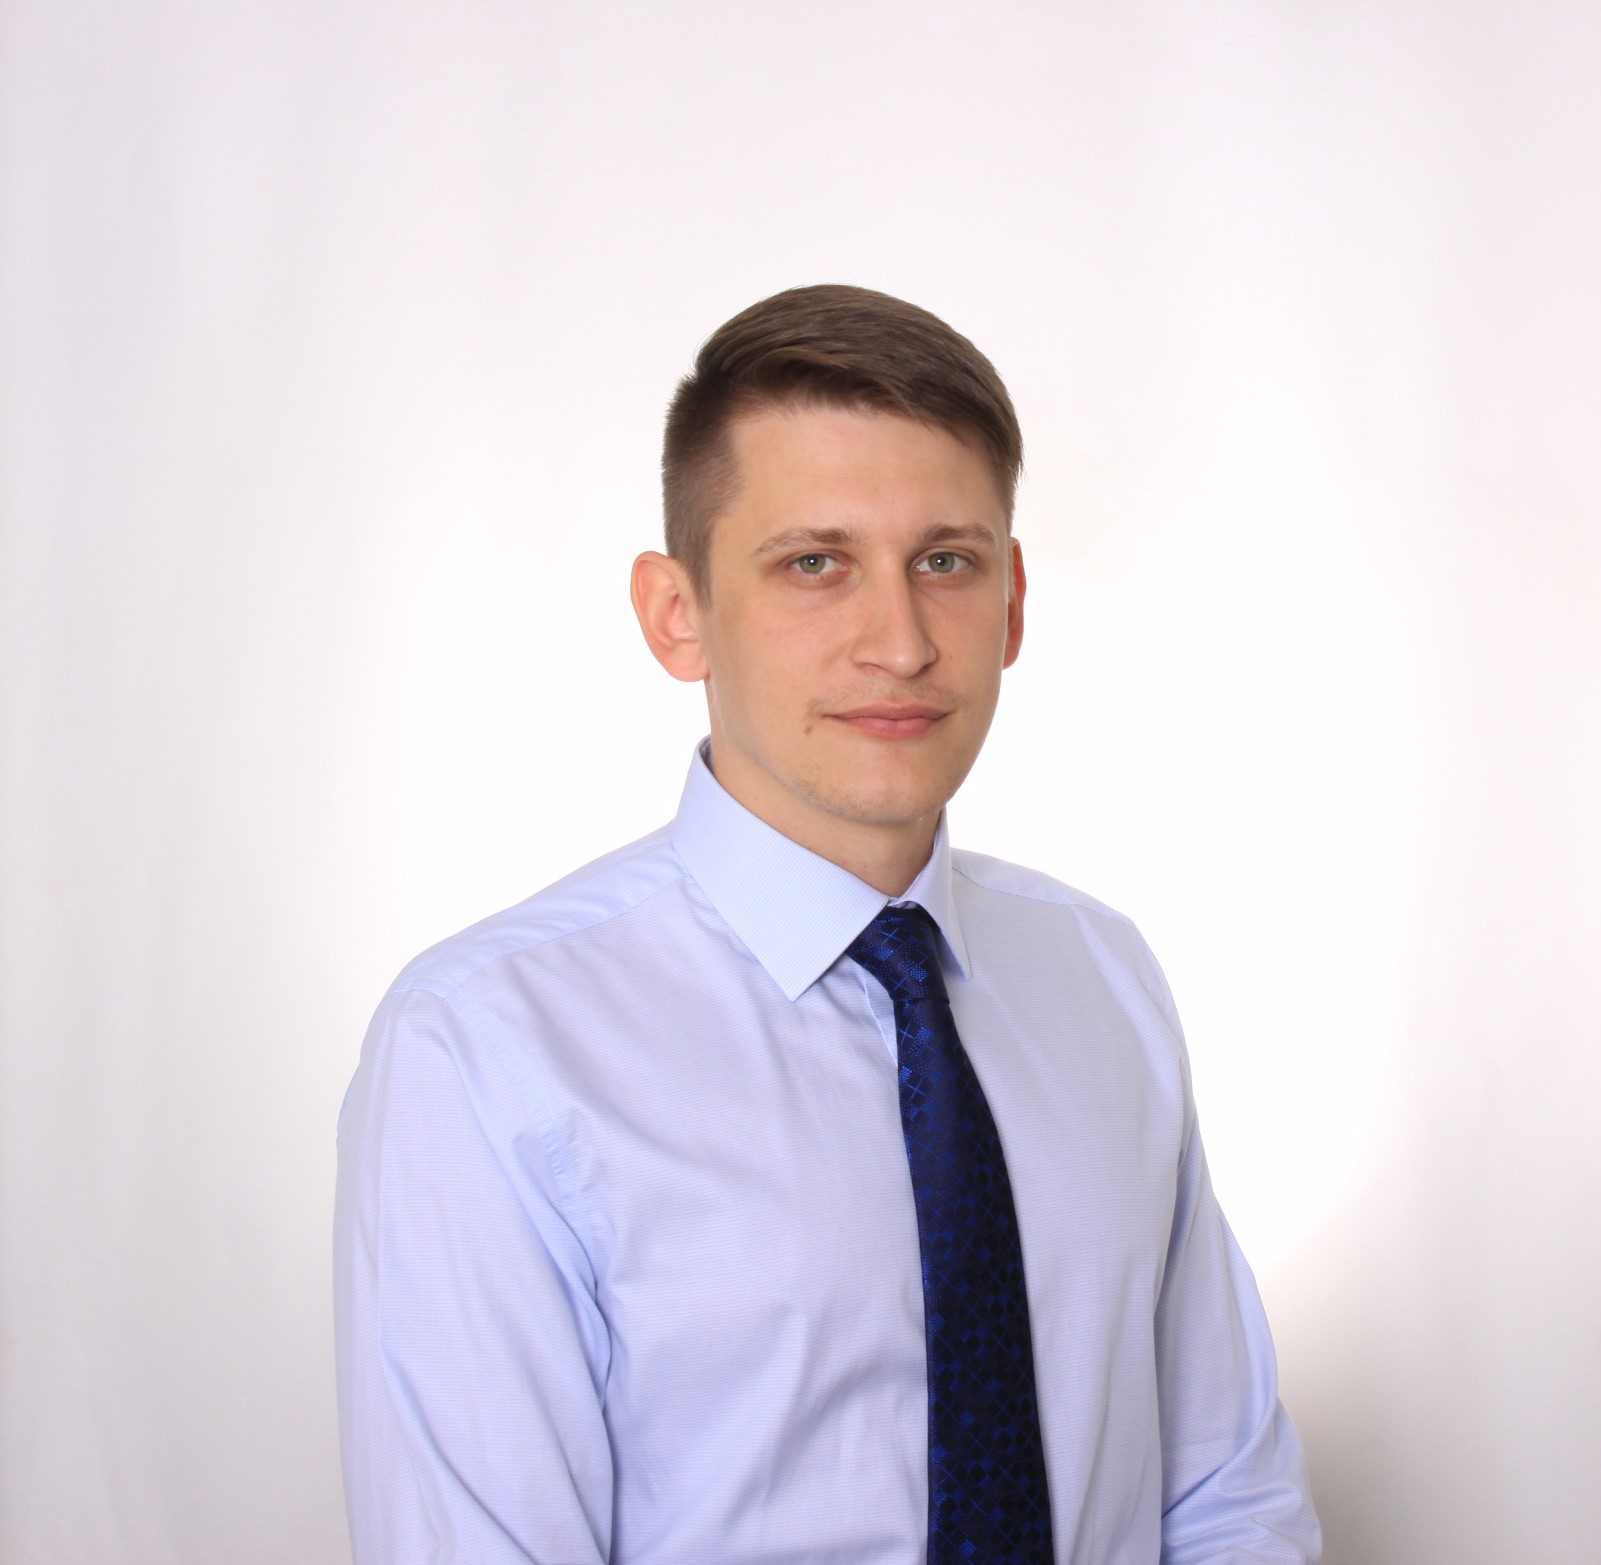 Павел Савельев, научный сотрудник Лаборатории стратегического планирования и евразийской интеграции РАНХиГС